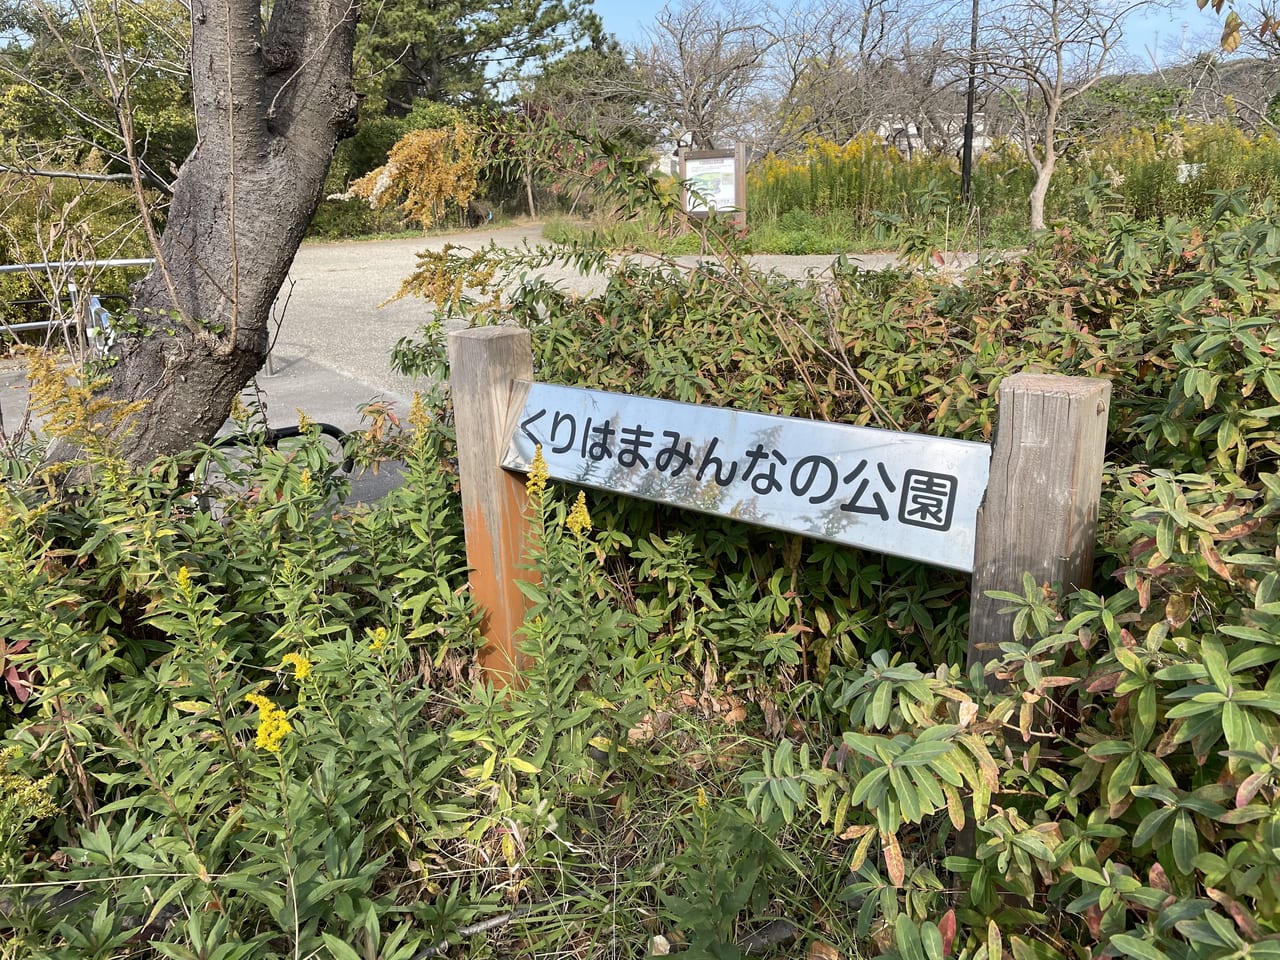 横須賀市 くりはまみんな公園 が12月7日以降利用停止になるそうです 号外net 横須賀市